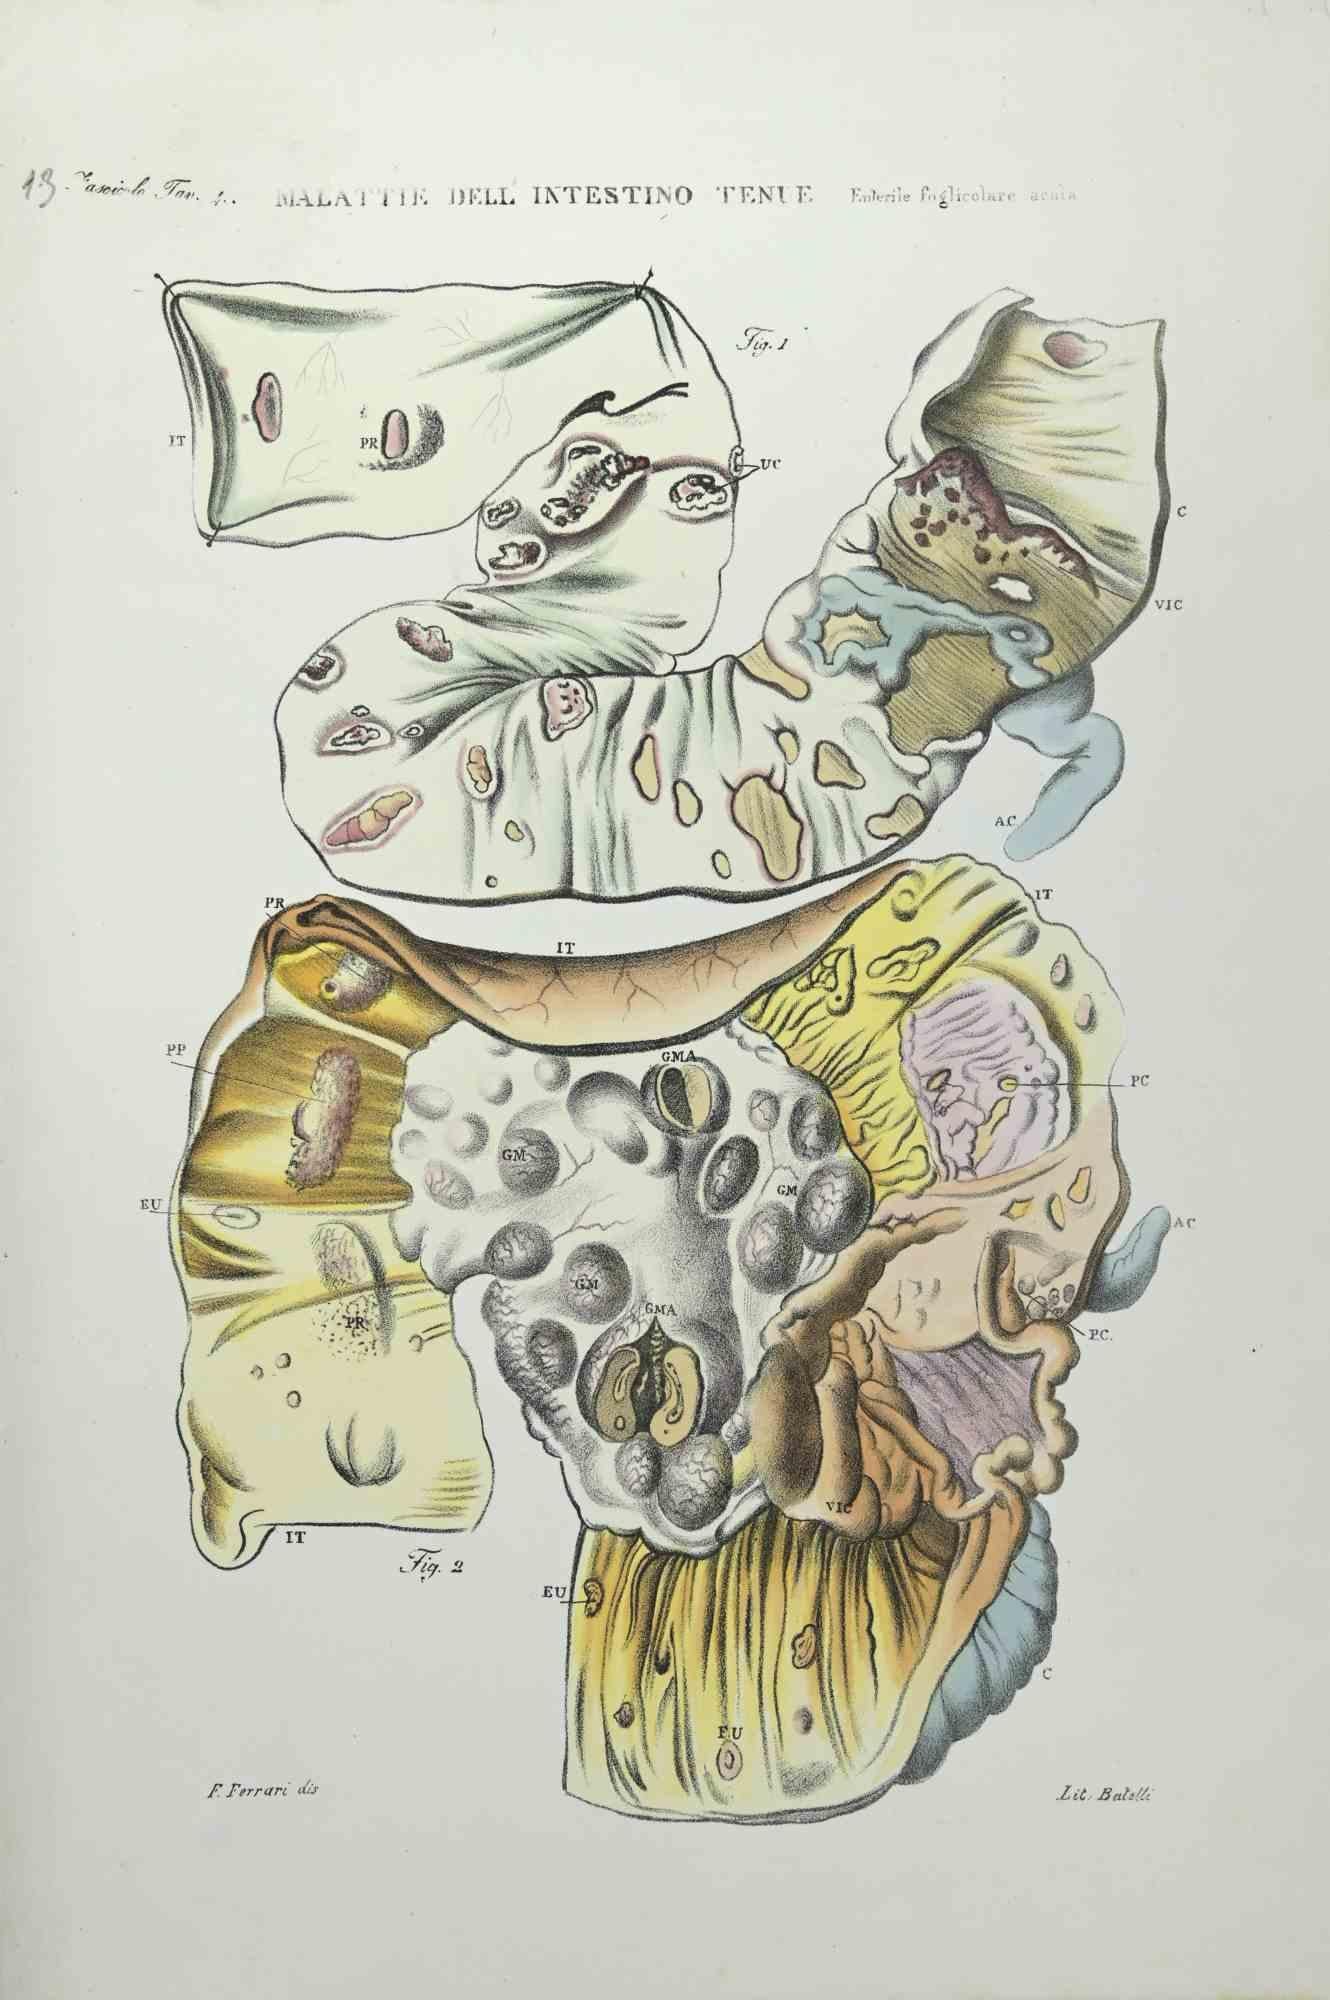 Small Intestine Diseases ist eine handkolorierte Lithographie von Ottavio Muzzi für die Ausgabe von Antoine Chazal, Human Anatomy, Printers Batelli and Ridolfi, aus dem Jahr 1843.

Das Kunstwerk gehört zum "Atlante Generale della Anatomia Patologica